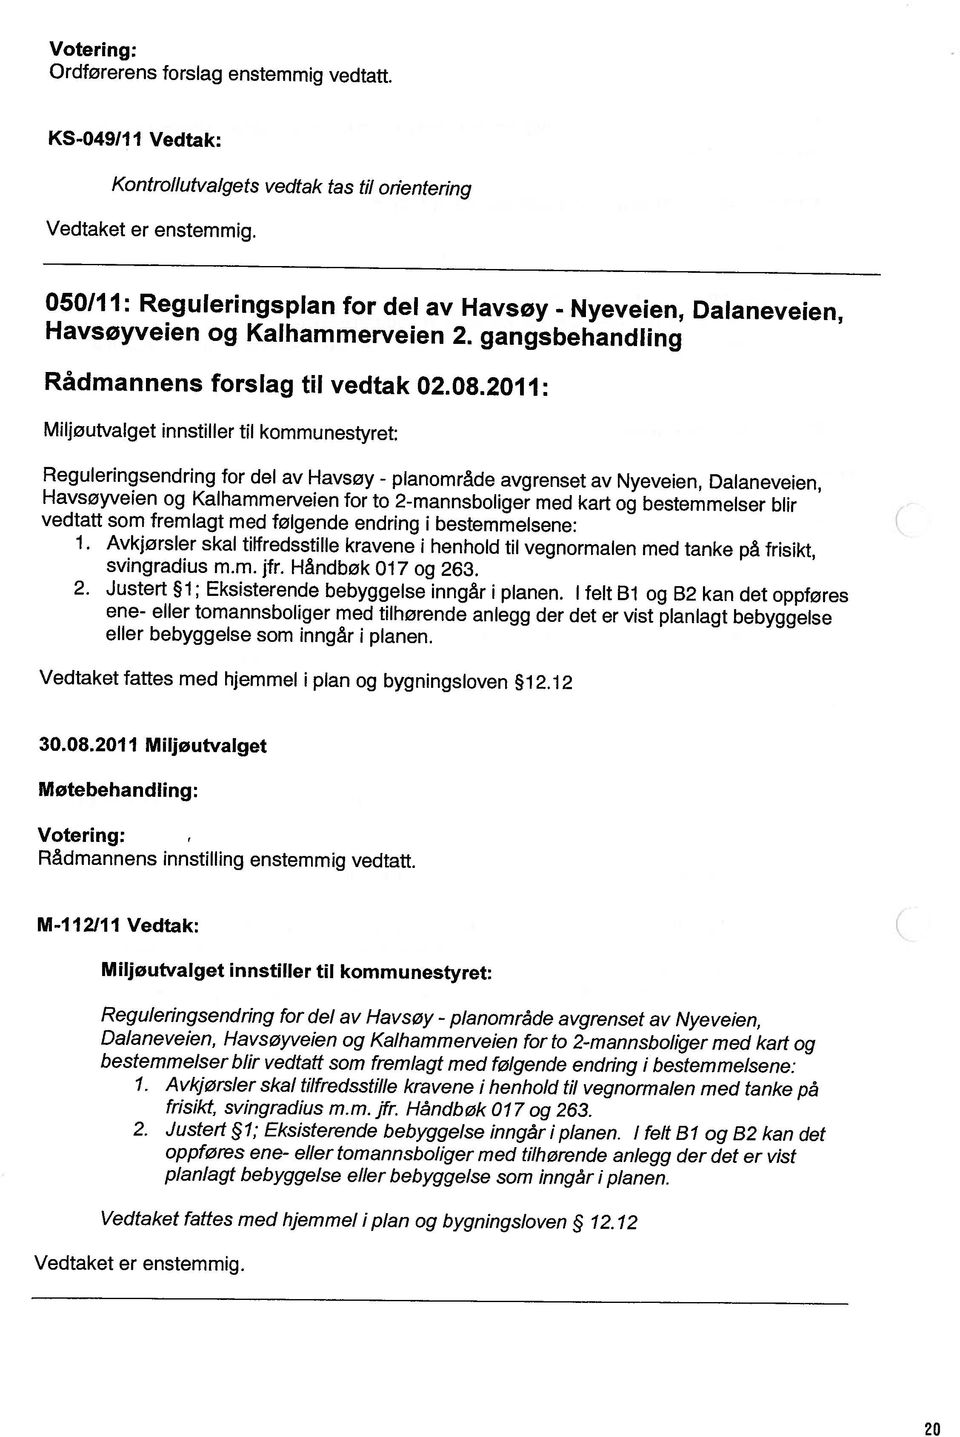 12 Reguleringsendring for del av Havsøy - planområde avgrenset av Nye veien, Dalaneveien, Havsøyveien og Kalhammerveien for to 2-mannsboliger med kart og planlagt bebyggelse eller bebyggelse som